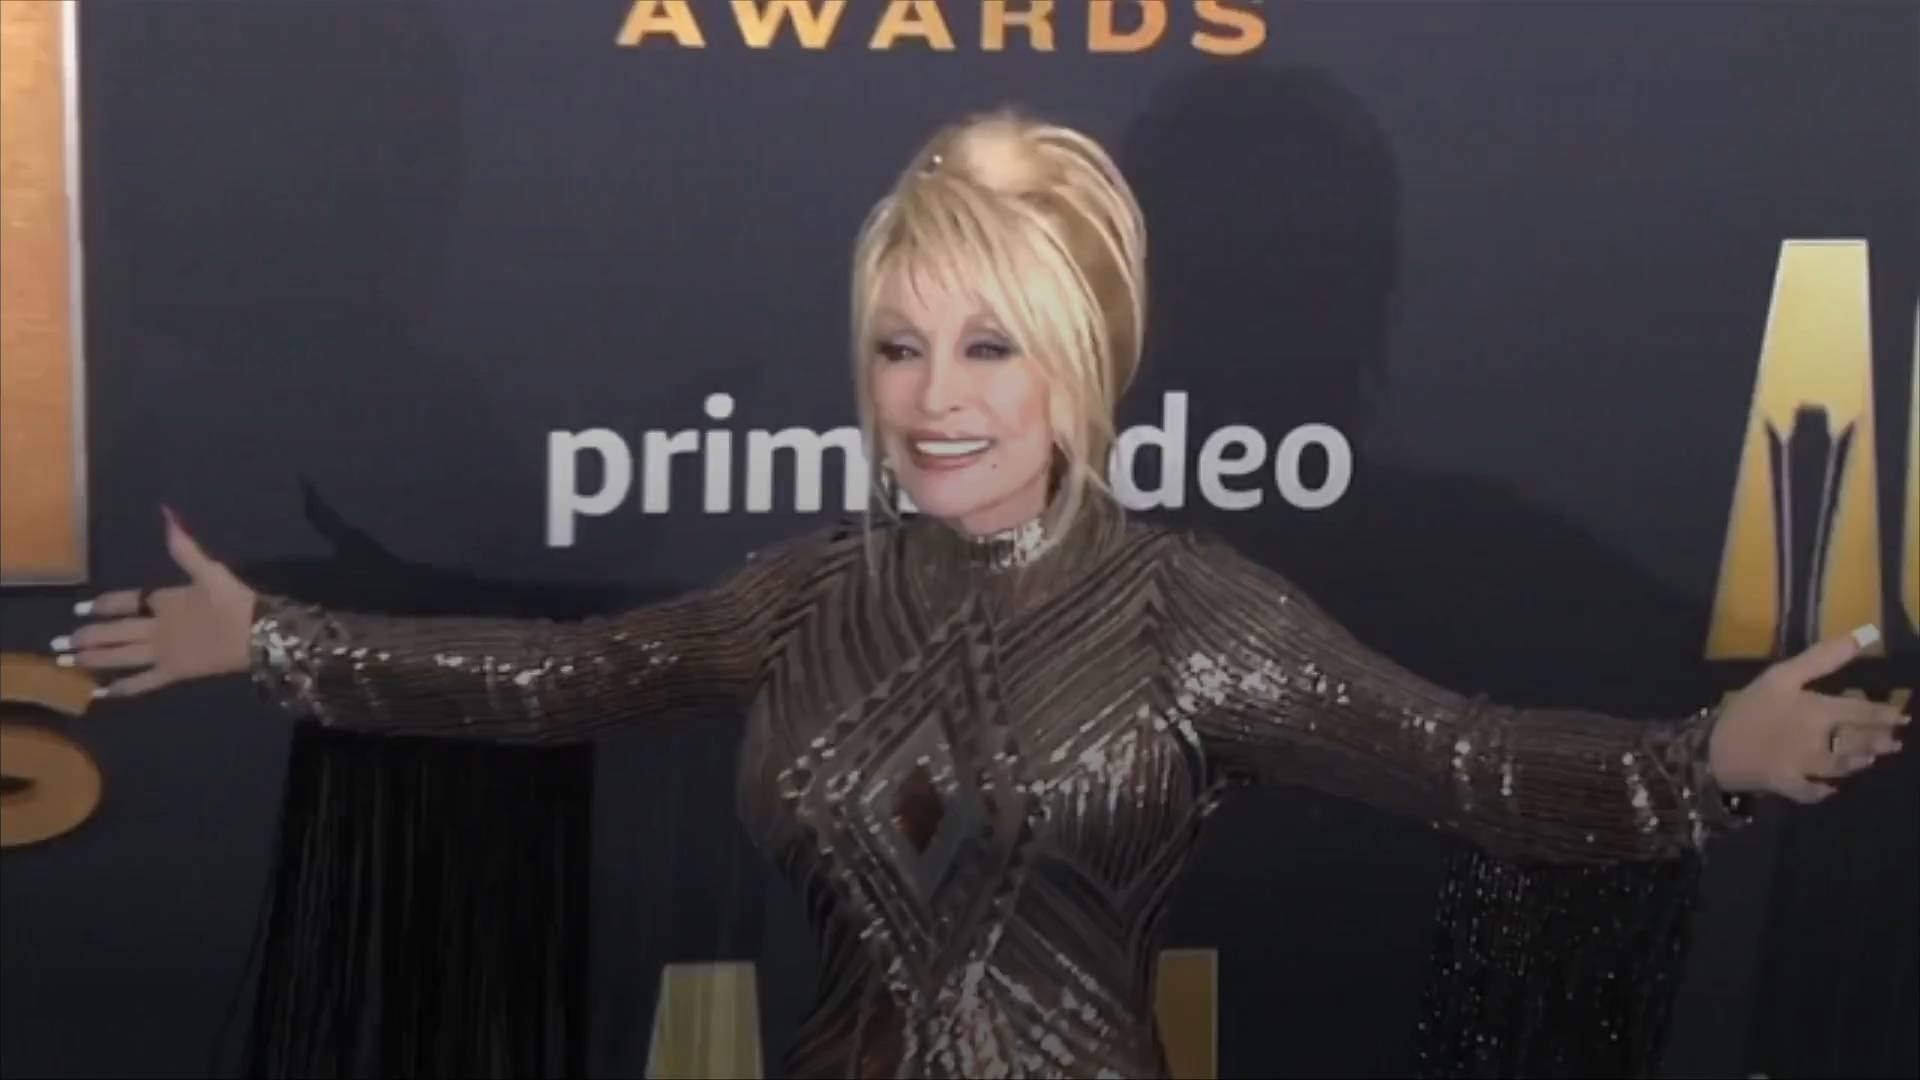 ⁣Jeff Bezos Gives Dolly Parton $100 Million Award